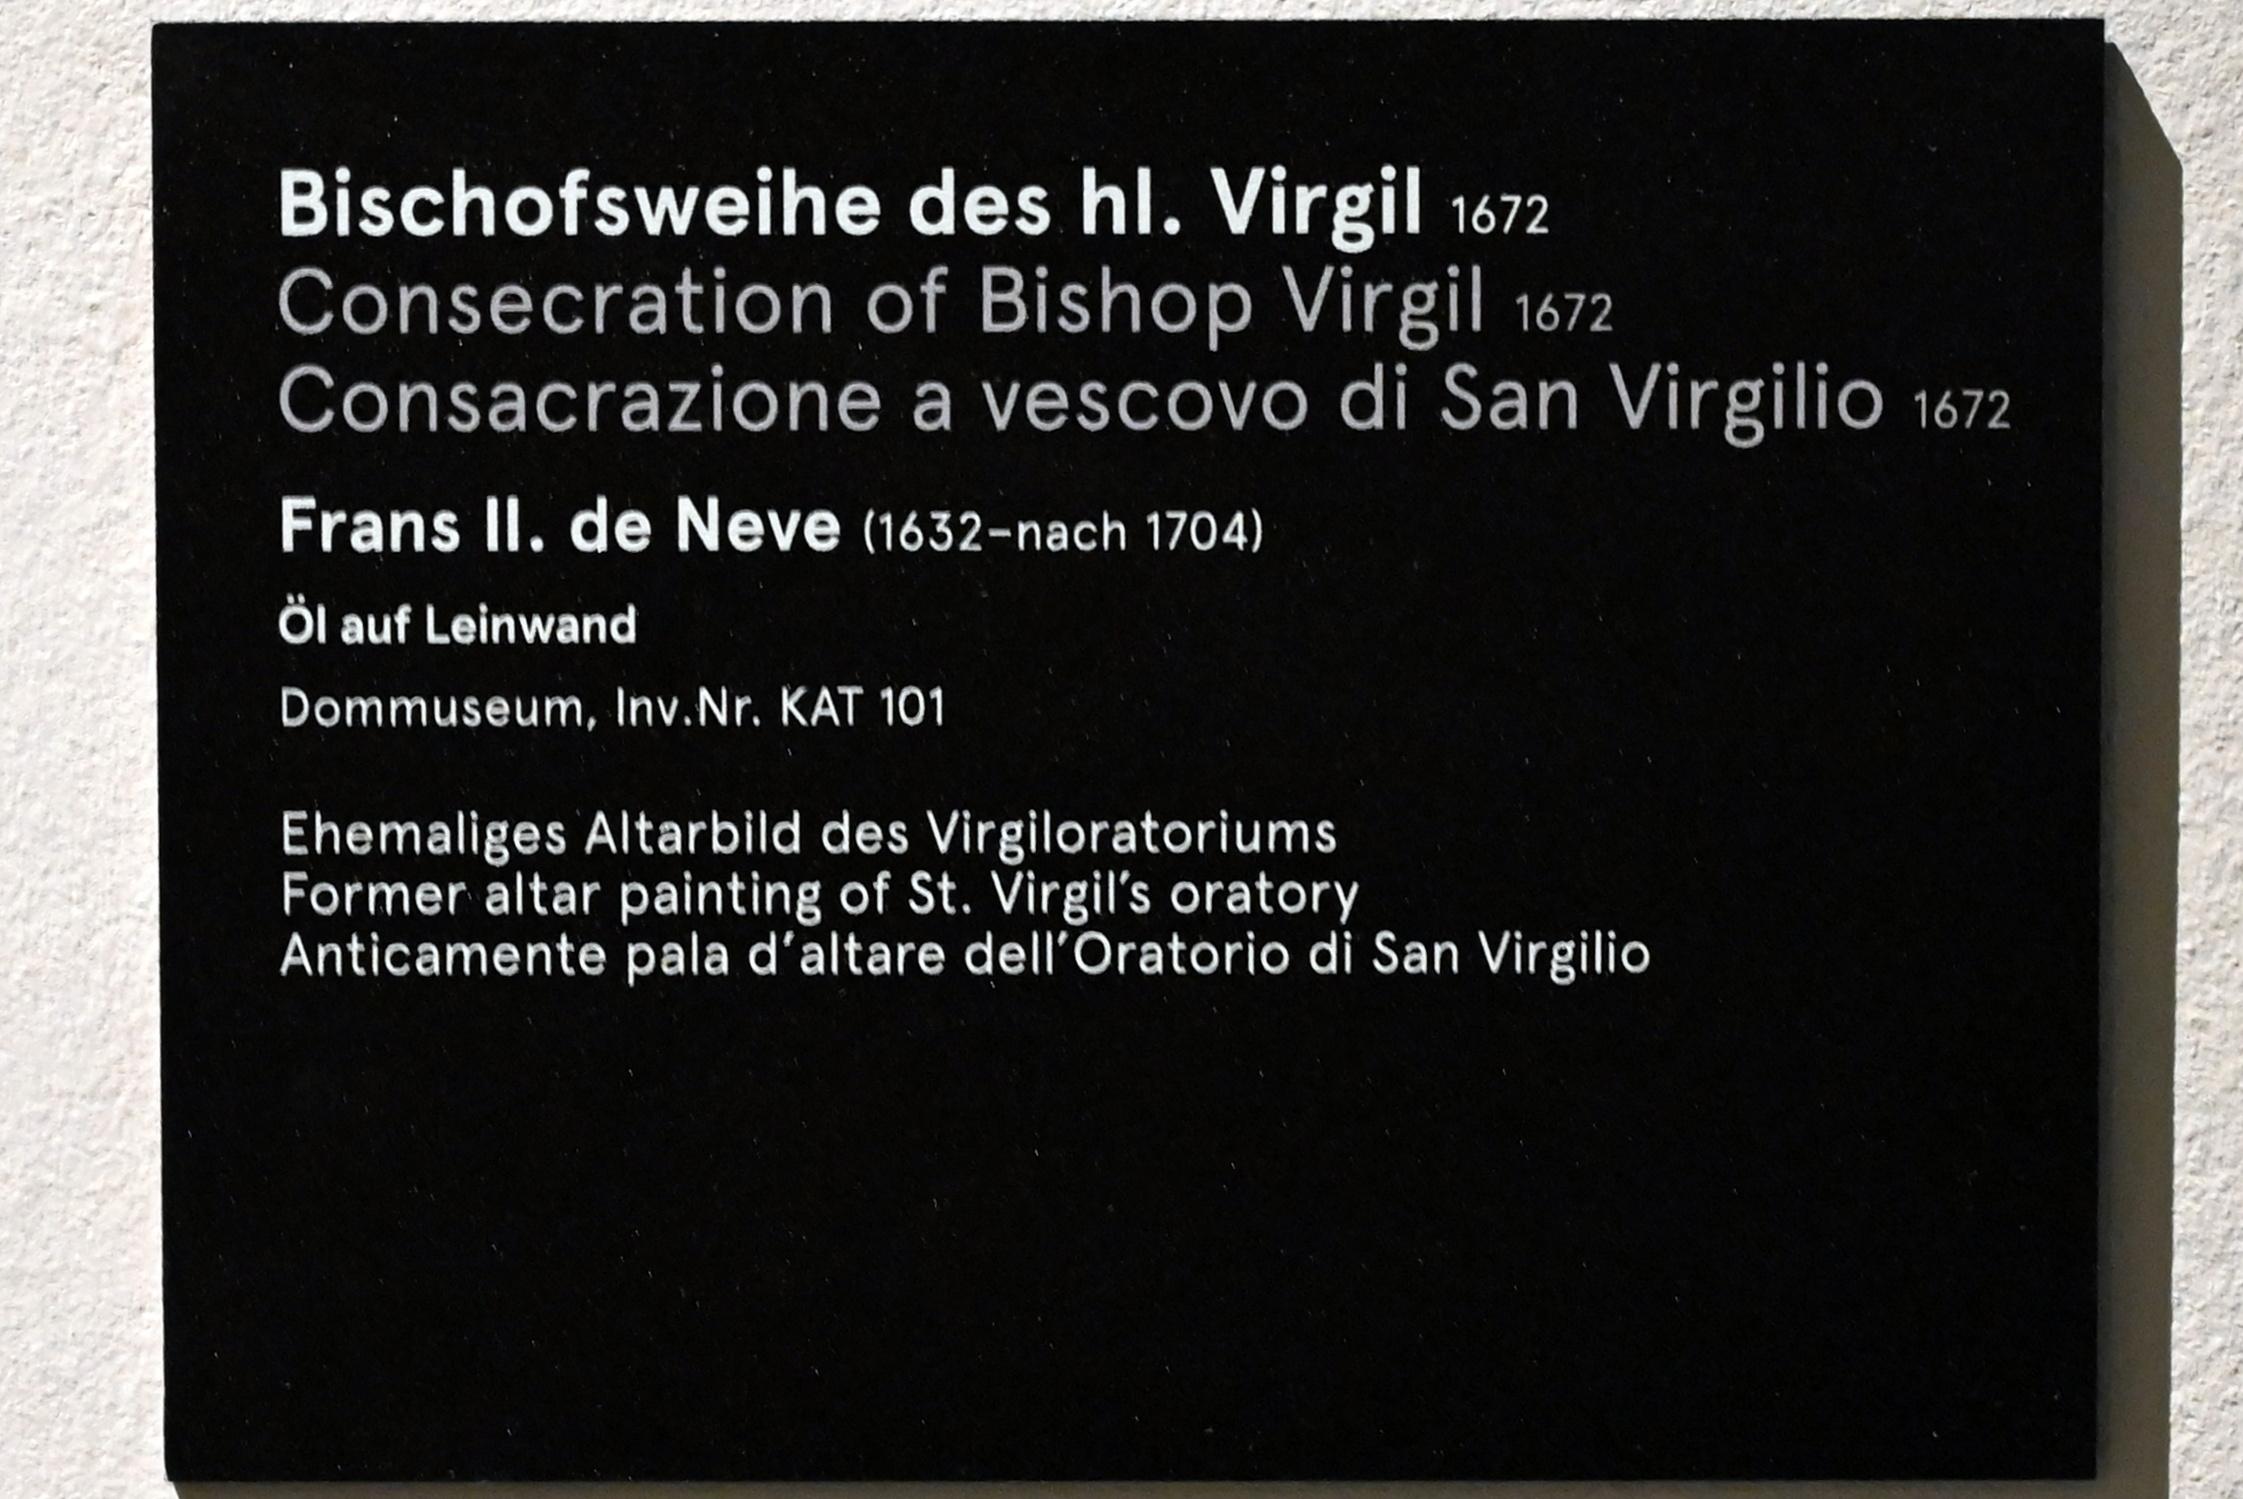 Frans II. de Neve (1672), Bischofsweihe des hl. Virgil, Salzburg, Salzburger Dom Hl. Rupert und H. Virgil, jetzt Salzburg, Dommuseum Salzburg, 1672, Bild 2/2